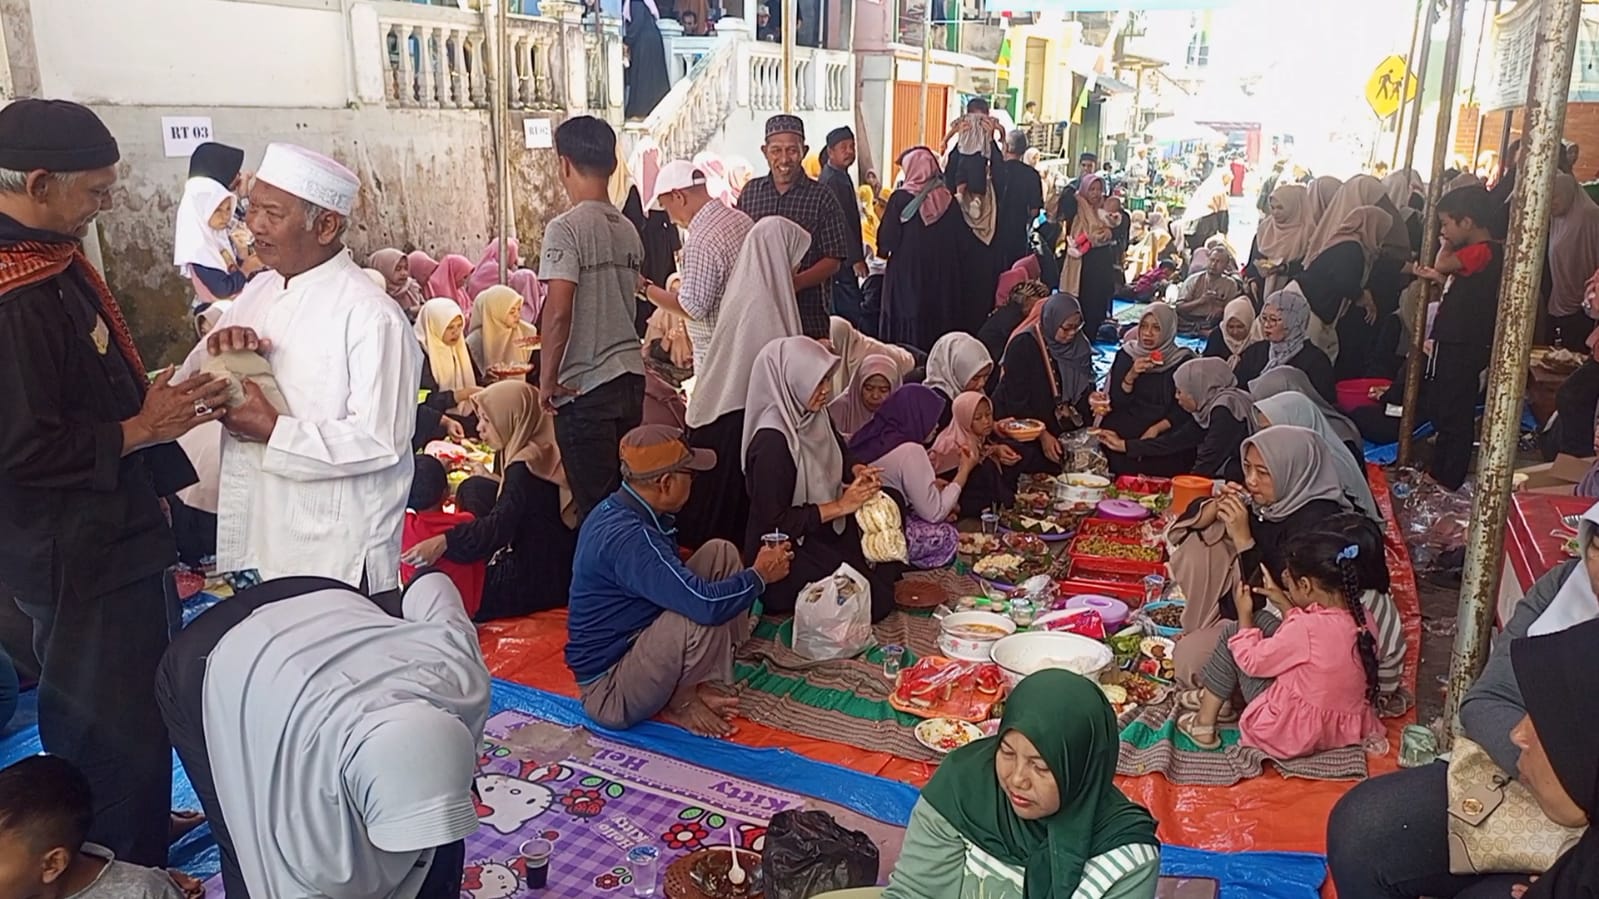 Tradisi Babarit, Ratusan Warga Kelurahan Winduherang Kuningan Makan Bareng di Jalan Raya